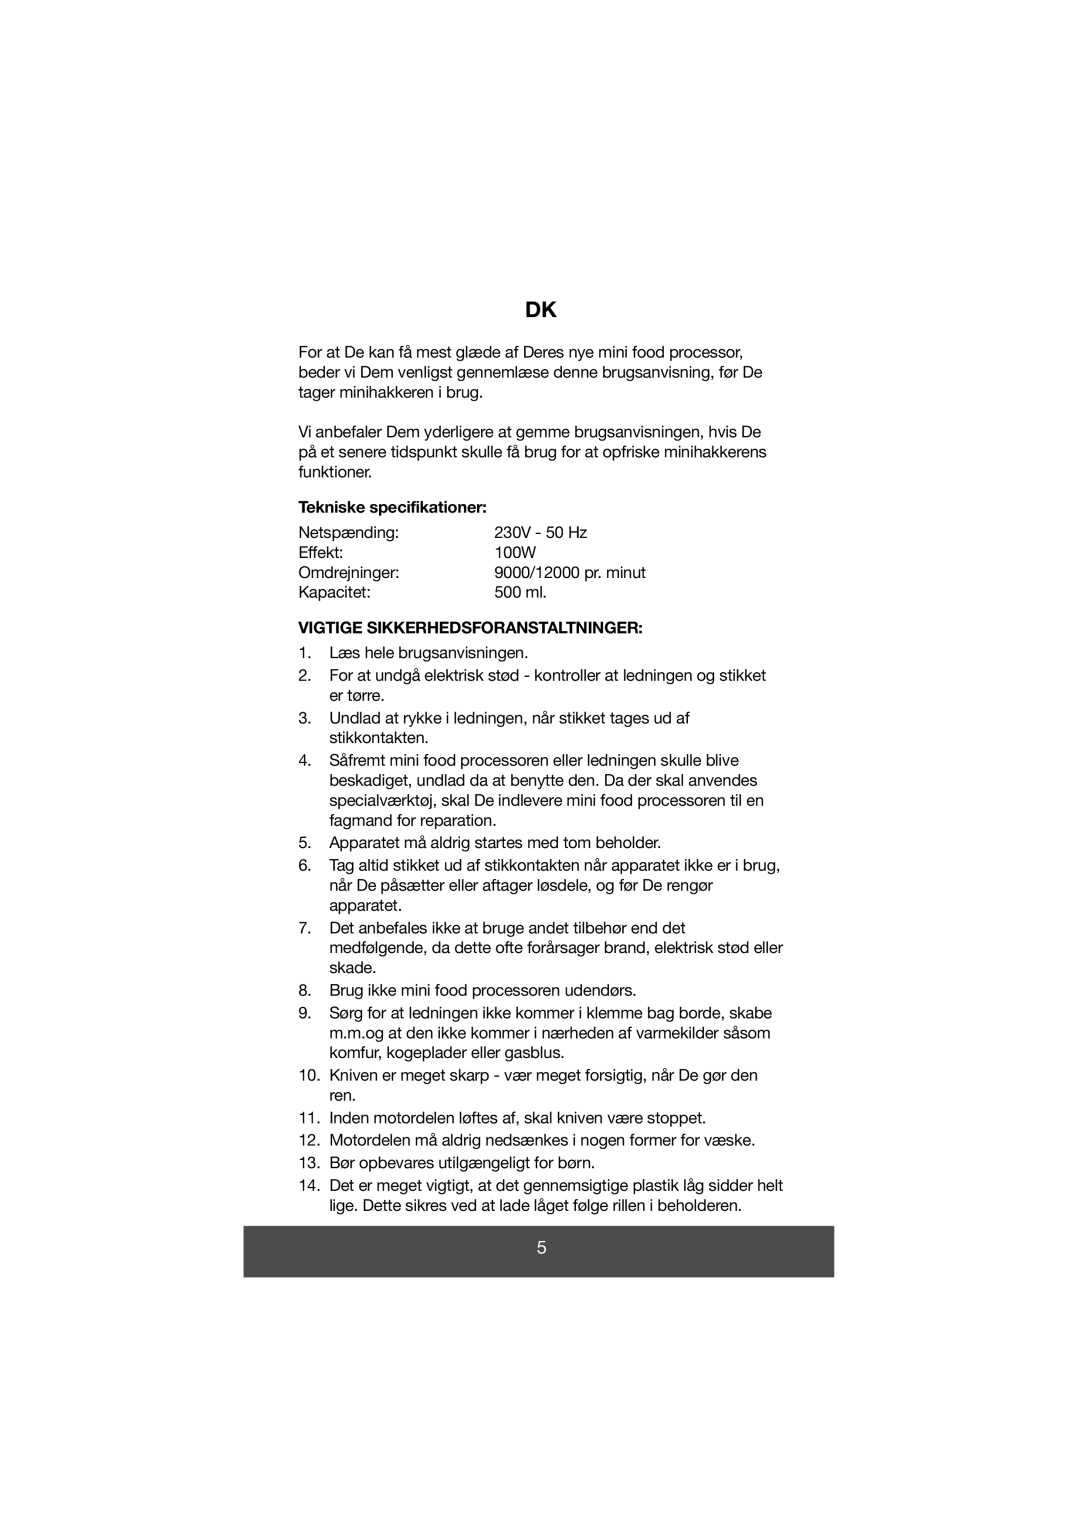 Melissa 646-028 manual Tekniske specifikationer, Vigtige Sikkerhedsforanstaltninger 